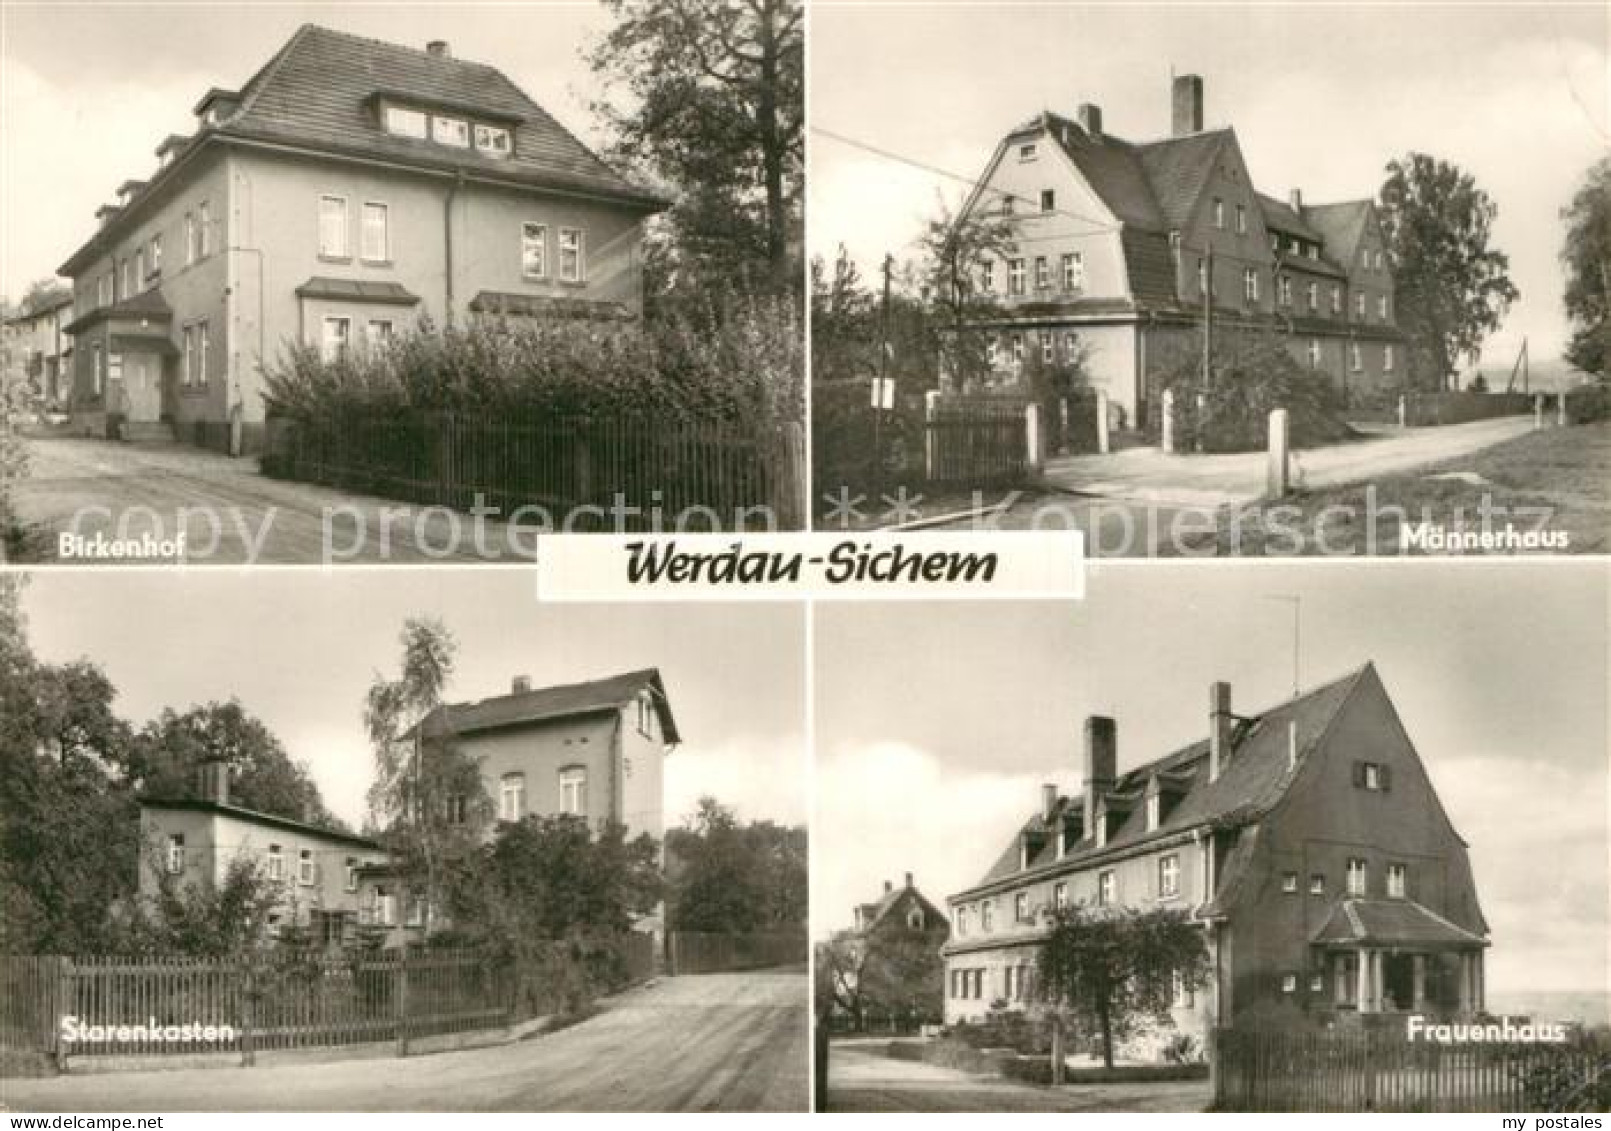 43348617 Werdau Sachsen Sichem Birkenhof Maennerhaus Starenkasten Frauenhaus Wer - Werdau